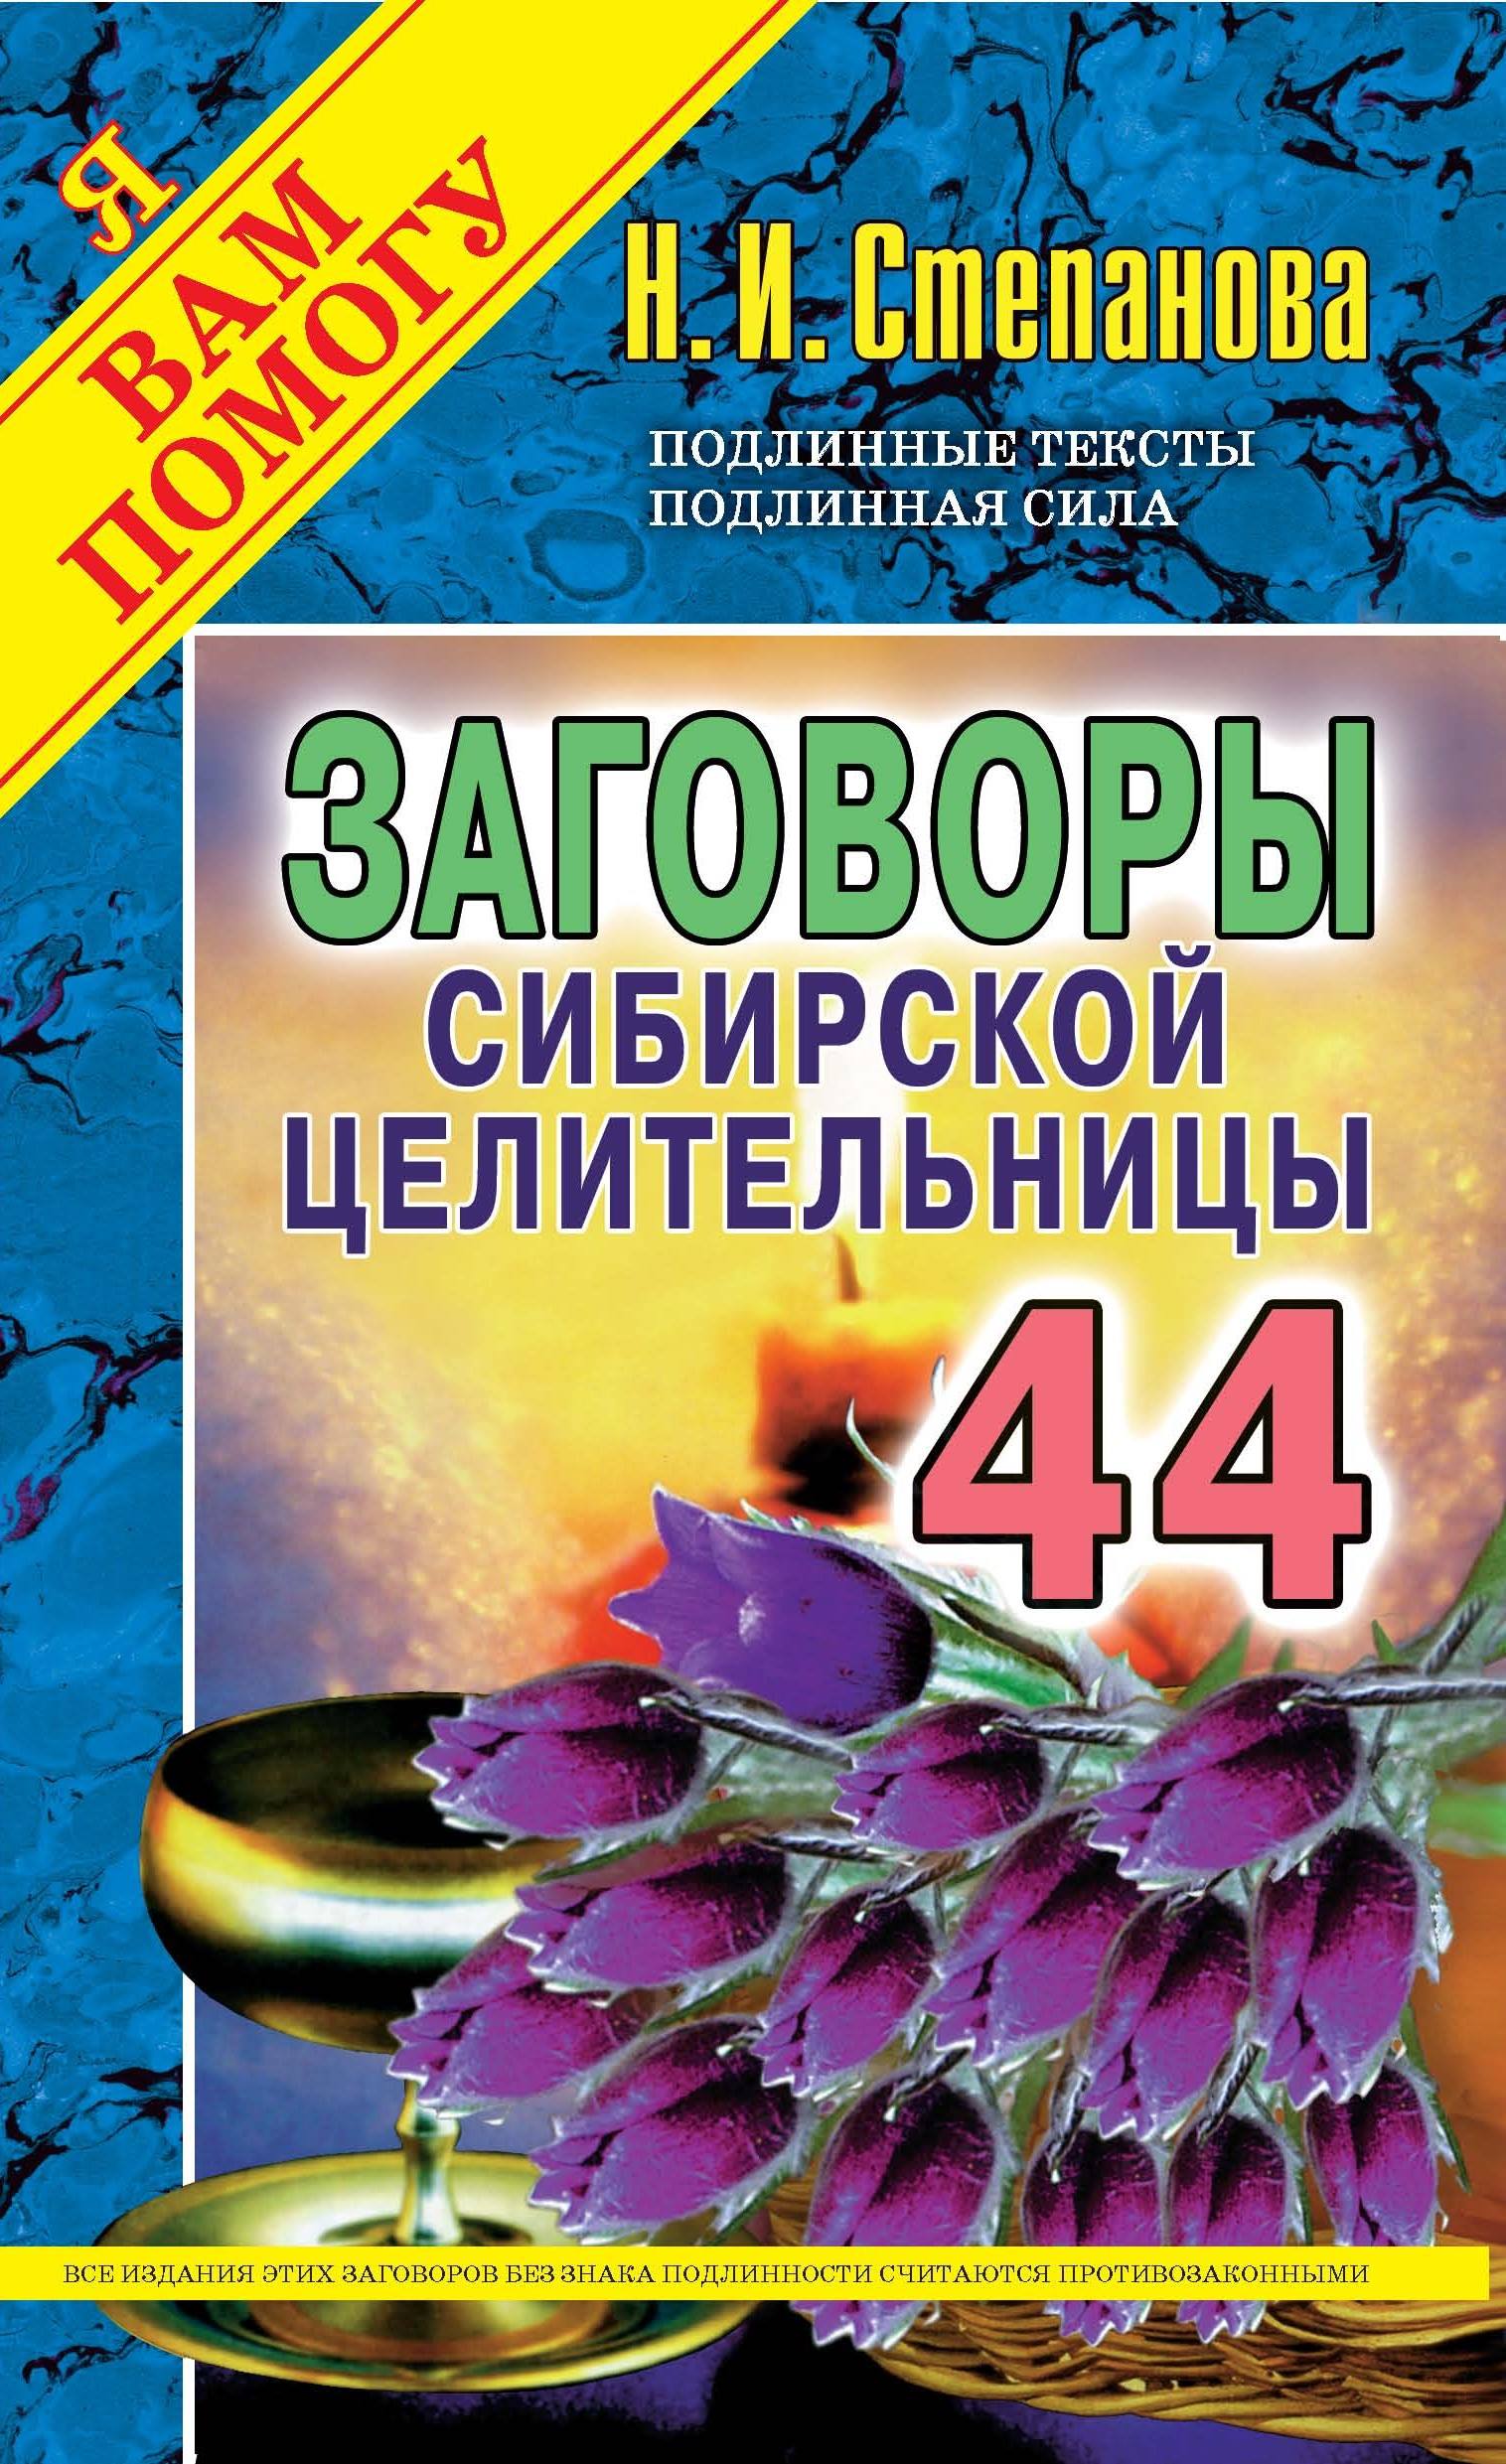 Книга сибирской целительницы натальи степановой